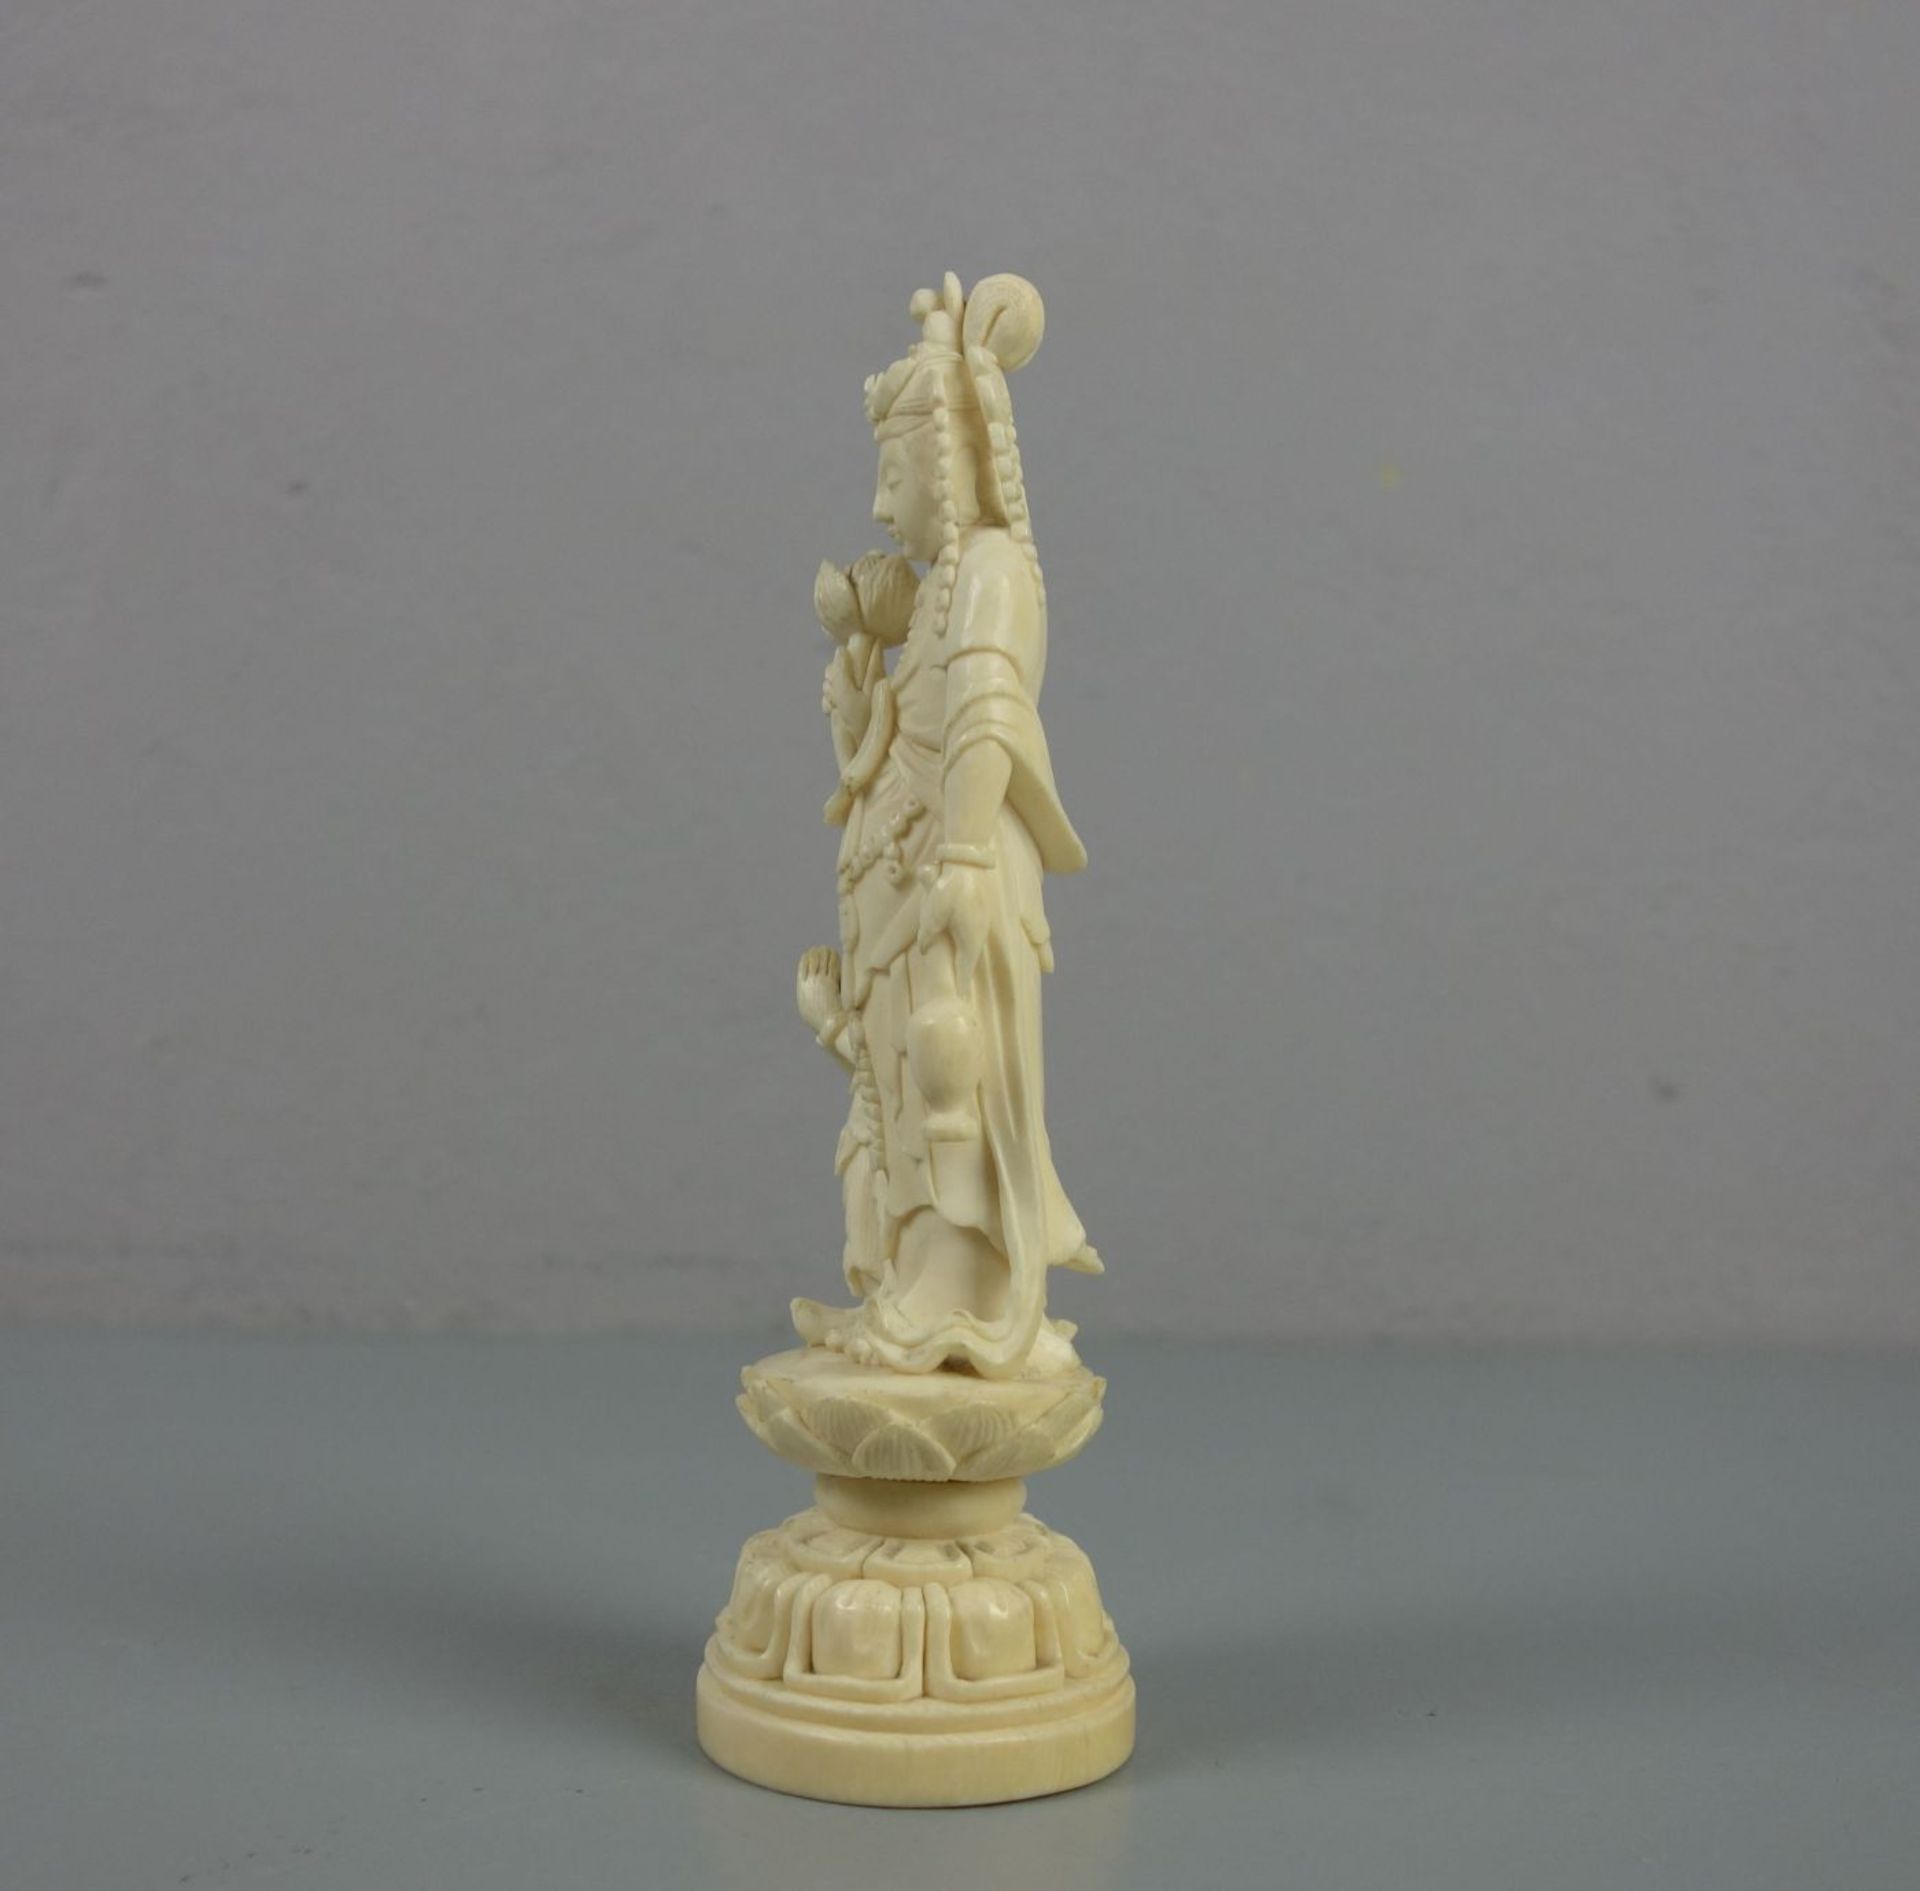 ELFENBEINFIGUR : "Guan Yin mit Assistenzfigur" / Okimono Figur / ivory figure, Asien. Elfenbein, - Image 4 of 5